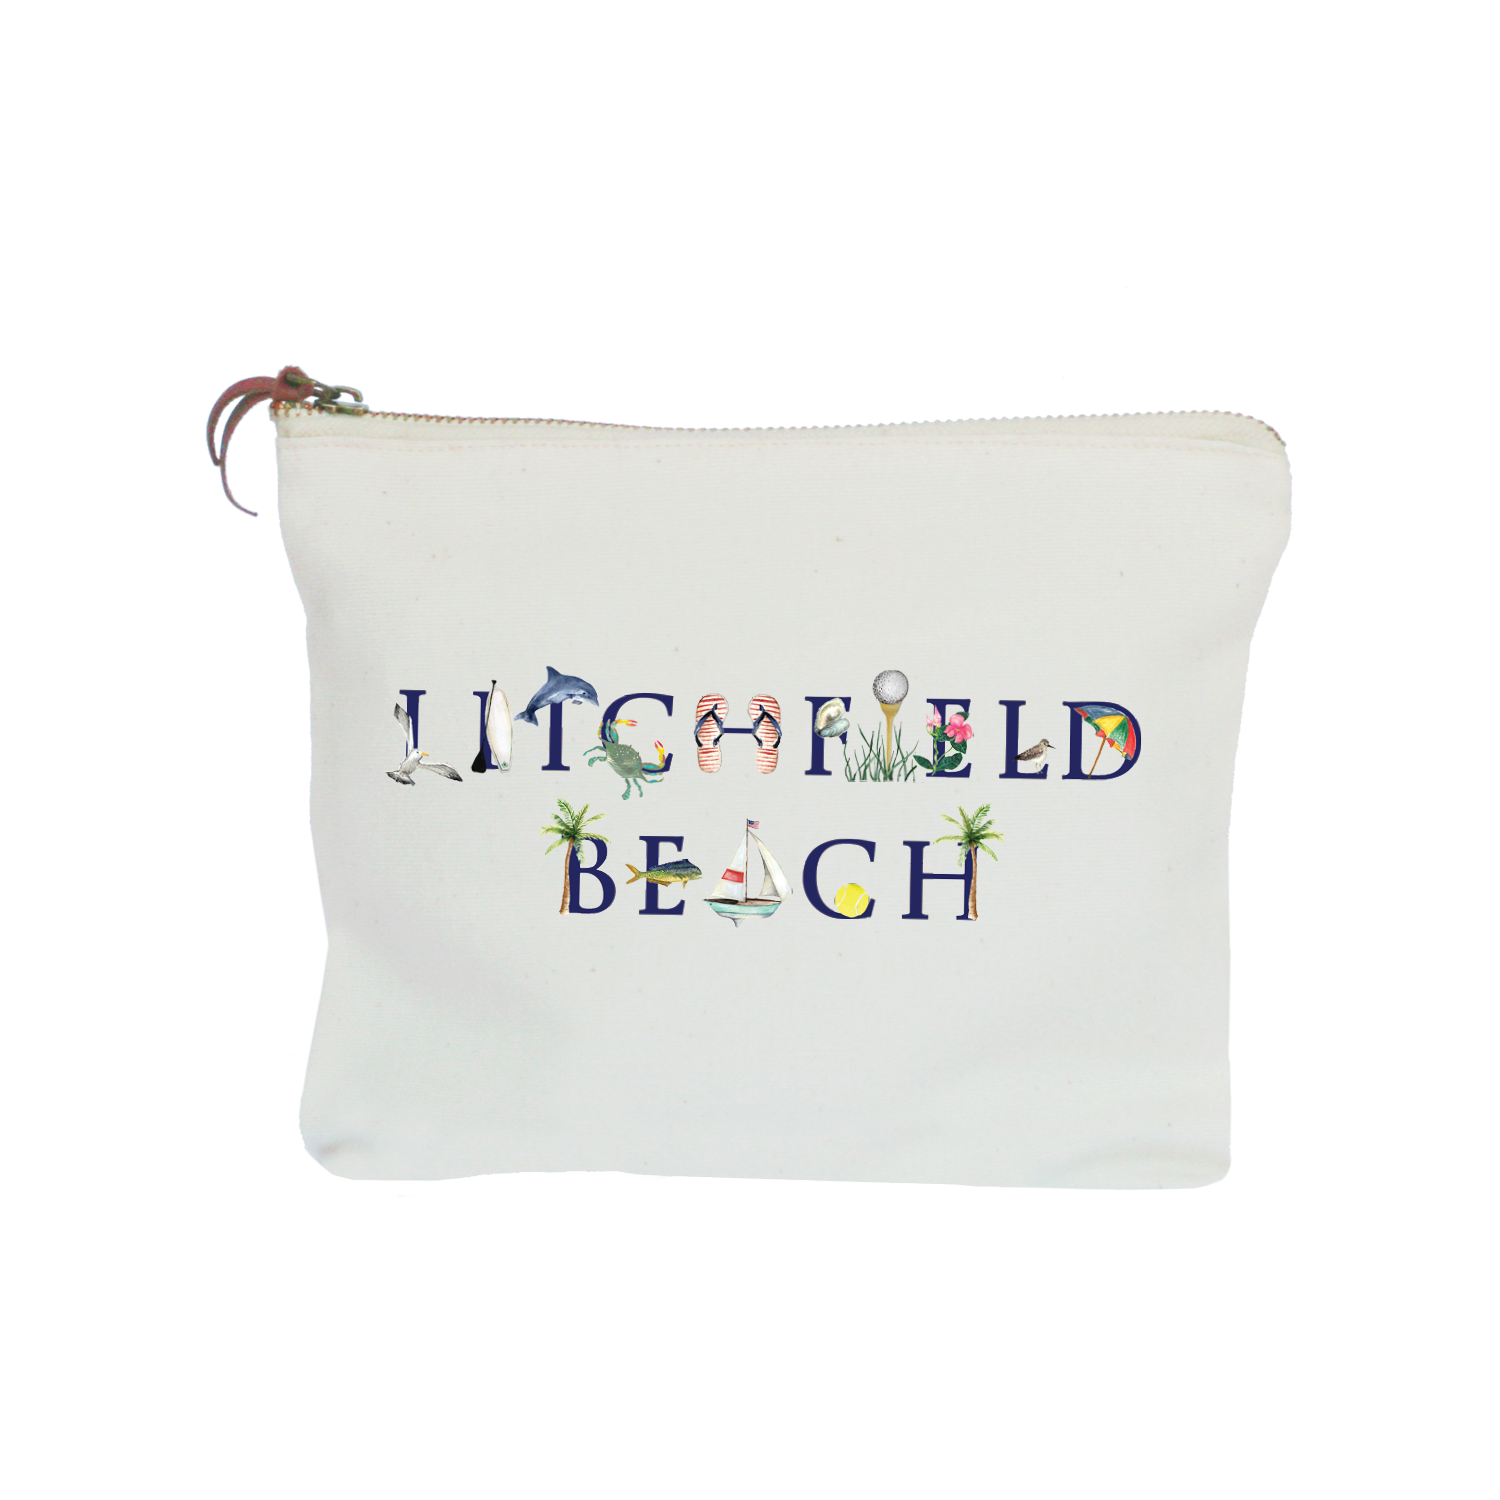 litchfield beach zipper pouch